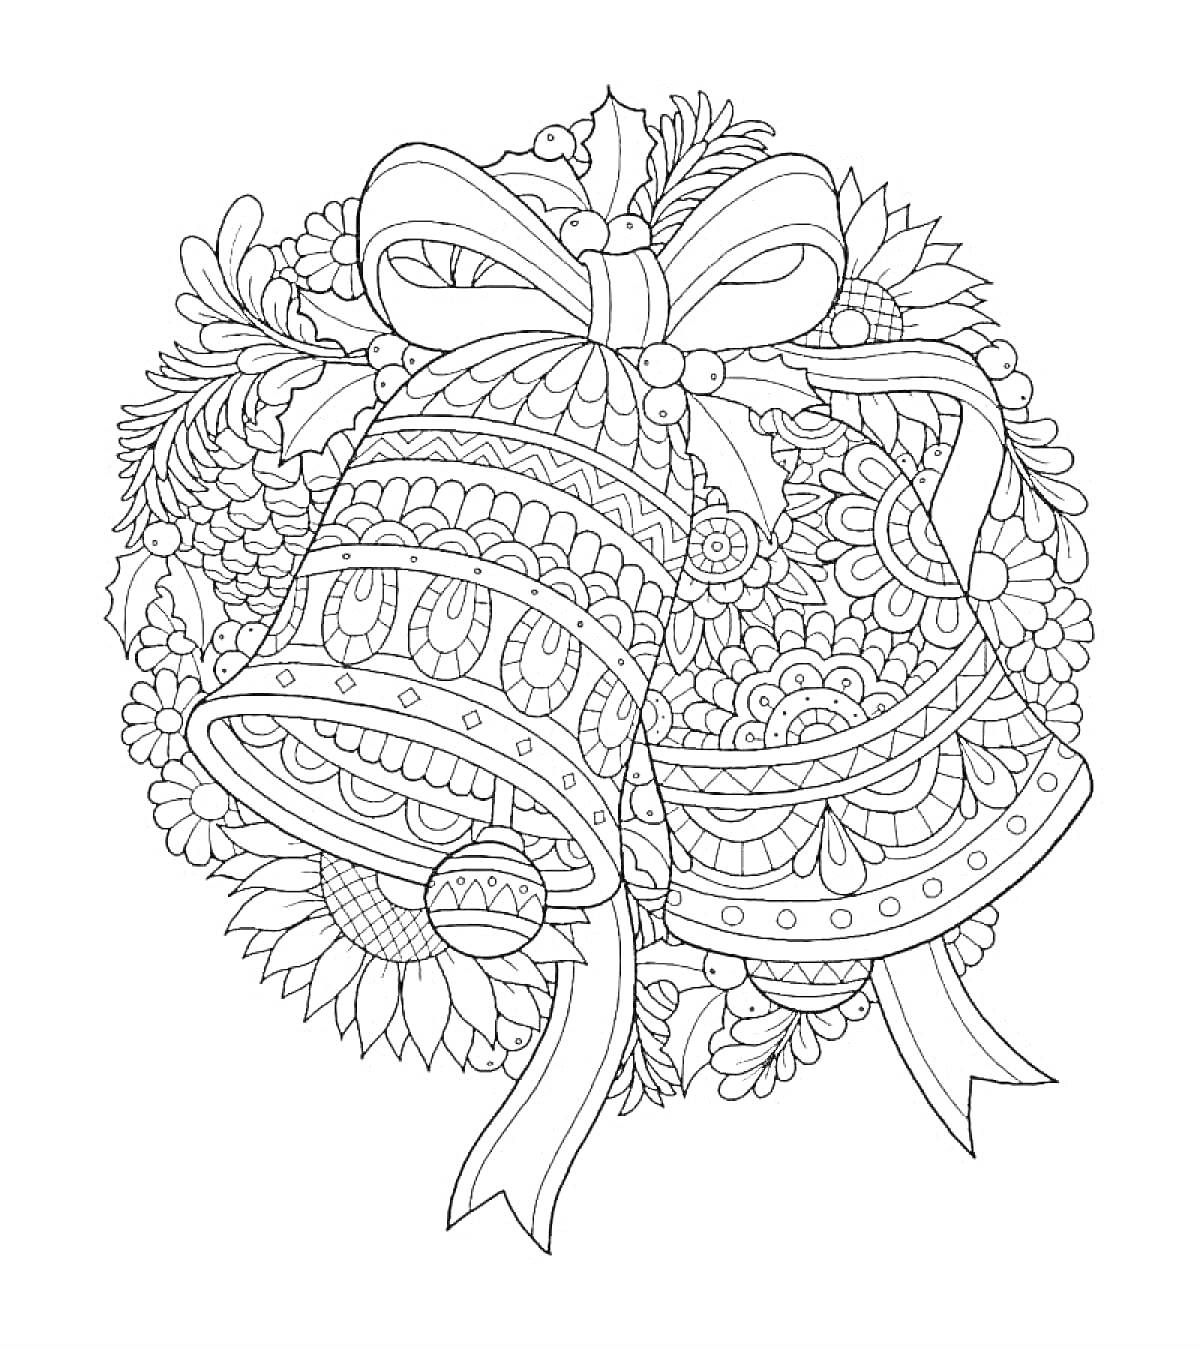 Декоративный колокольчик с бантом и цветами на фоне елочных веток